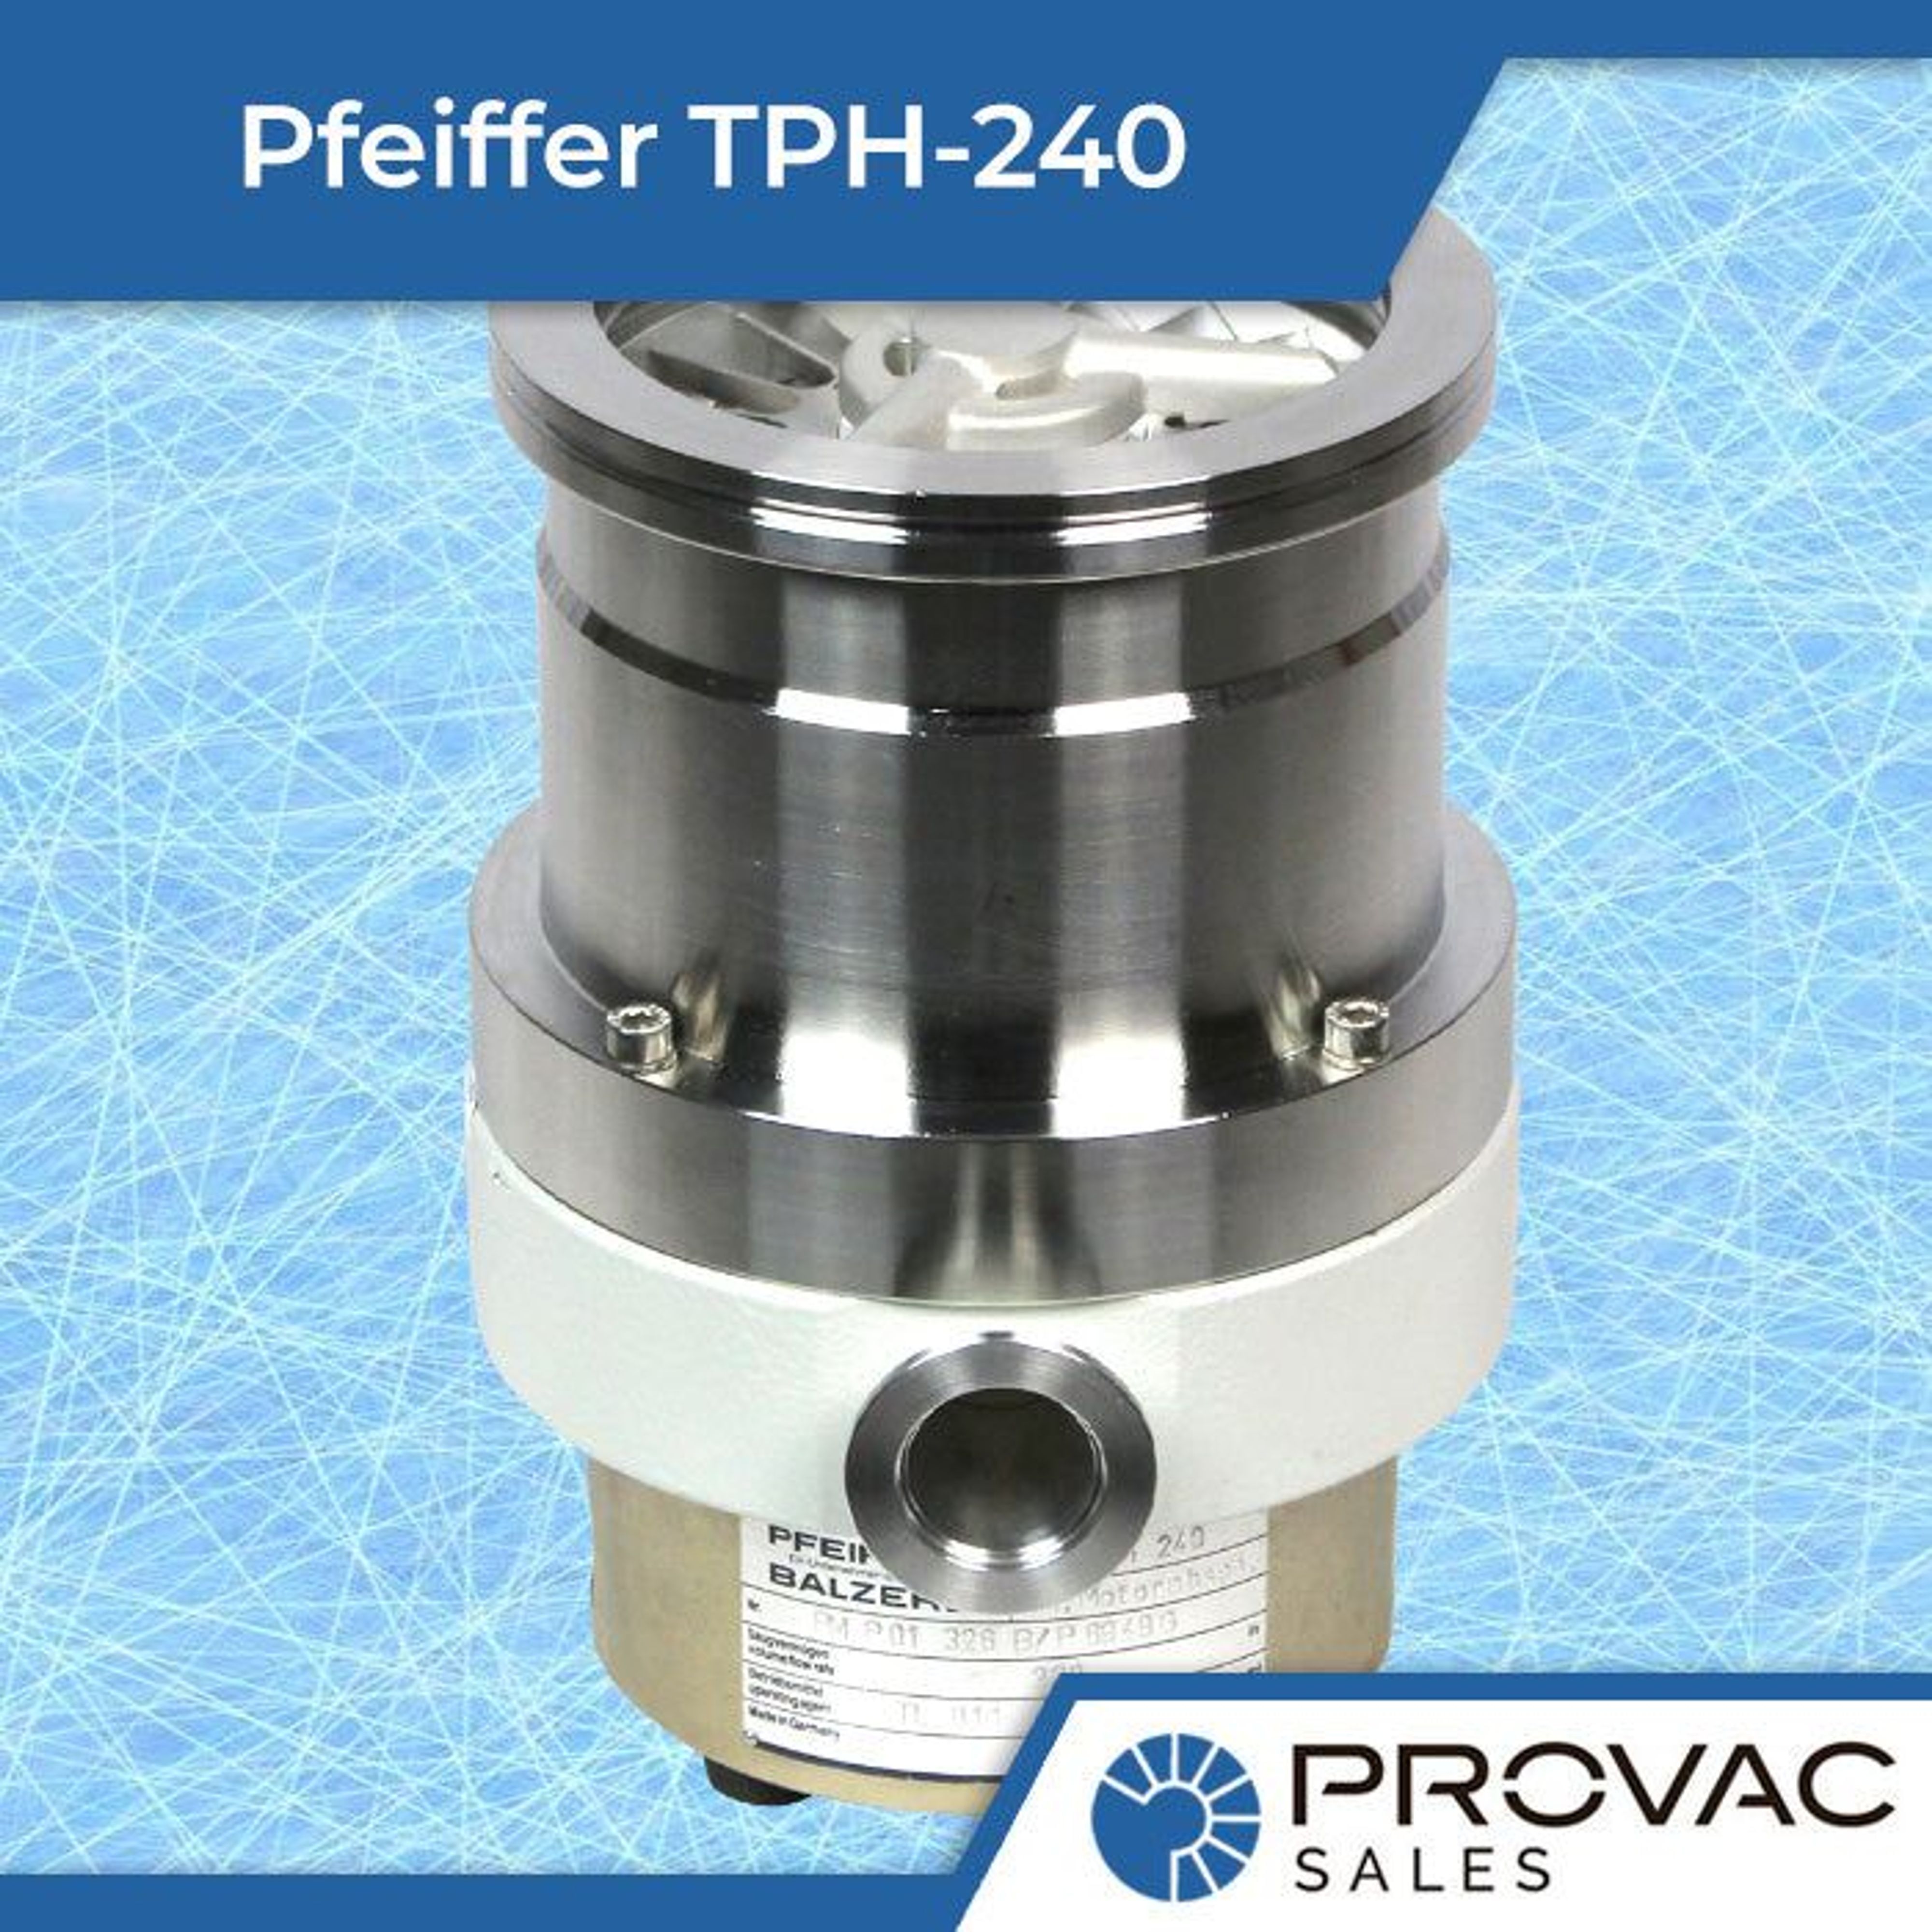 Pfeiffer TPH-240 Turbomolecular Pump Background